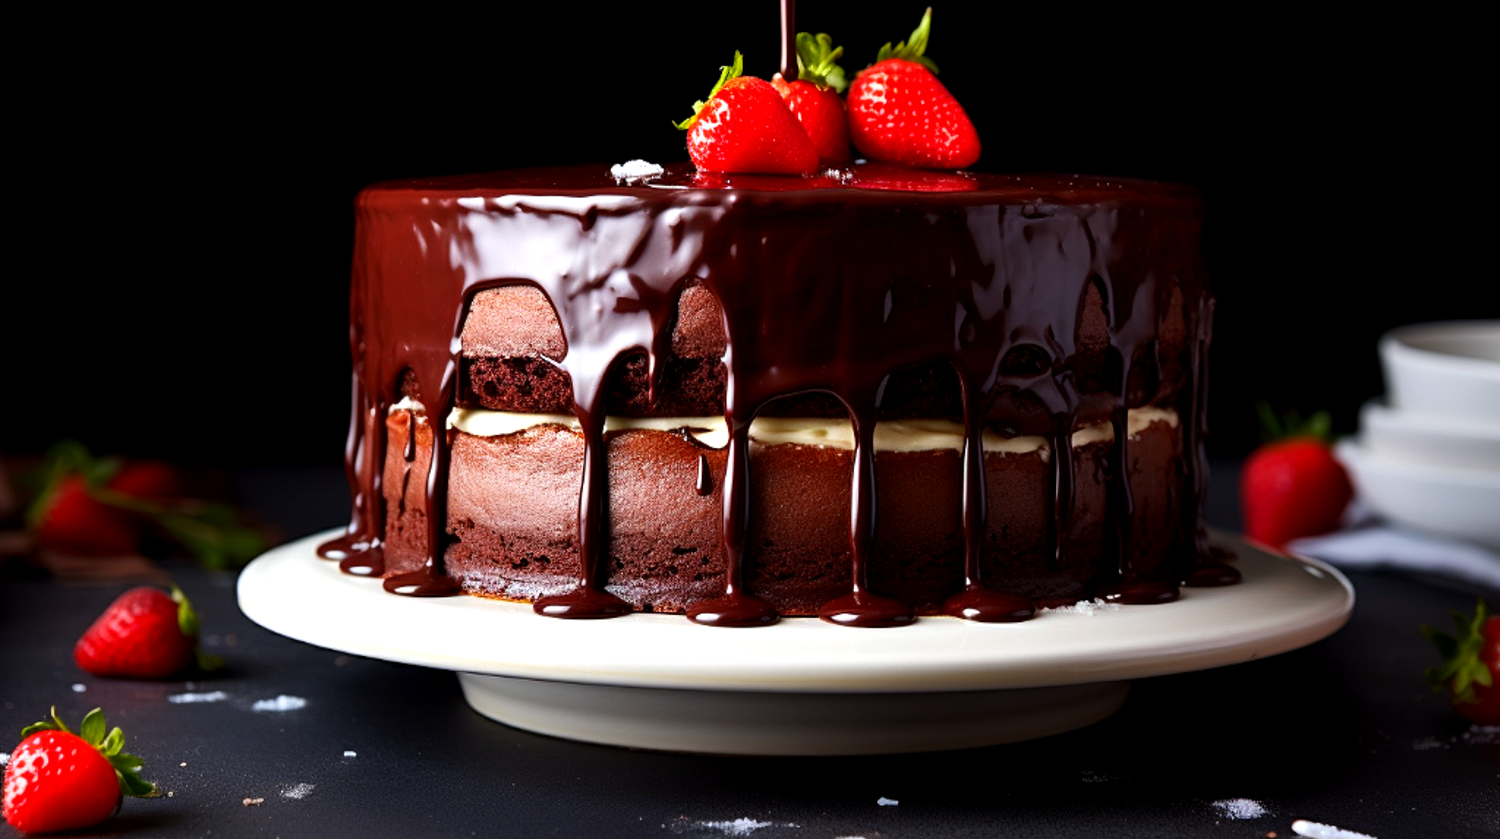 Desfrute da delícia de um bolo de chocolate com cobertura de